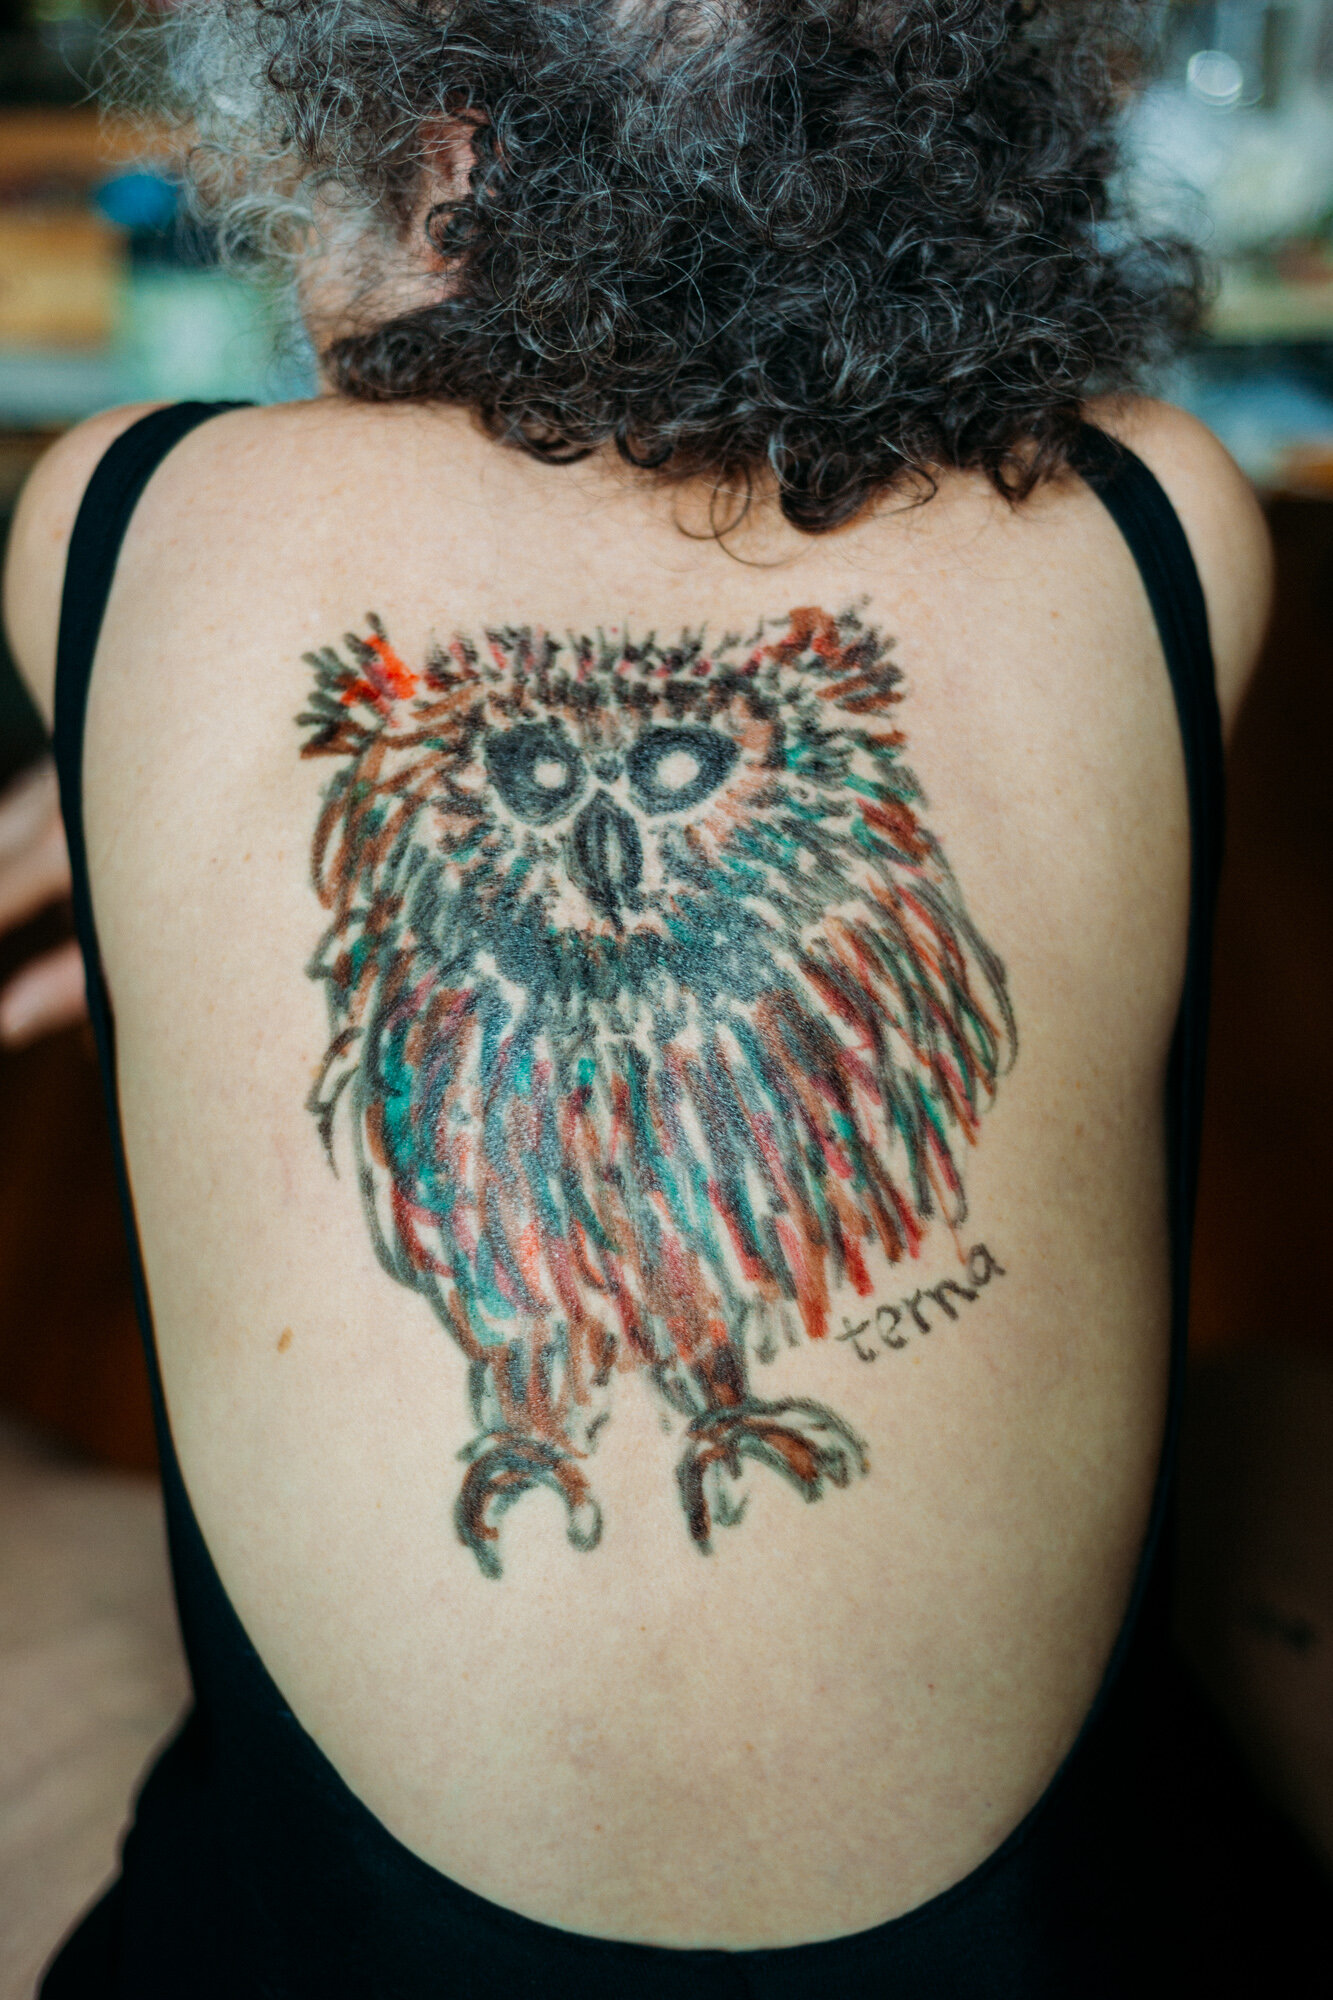   Hand Drawn Owl Tattoo , 2016 